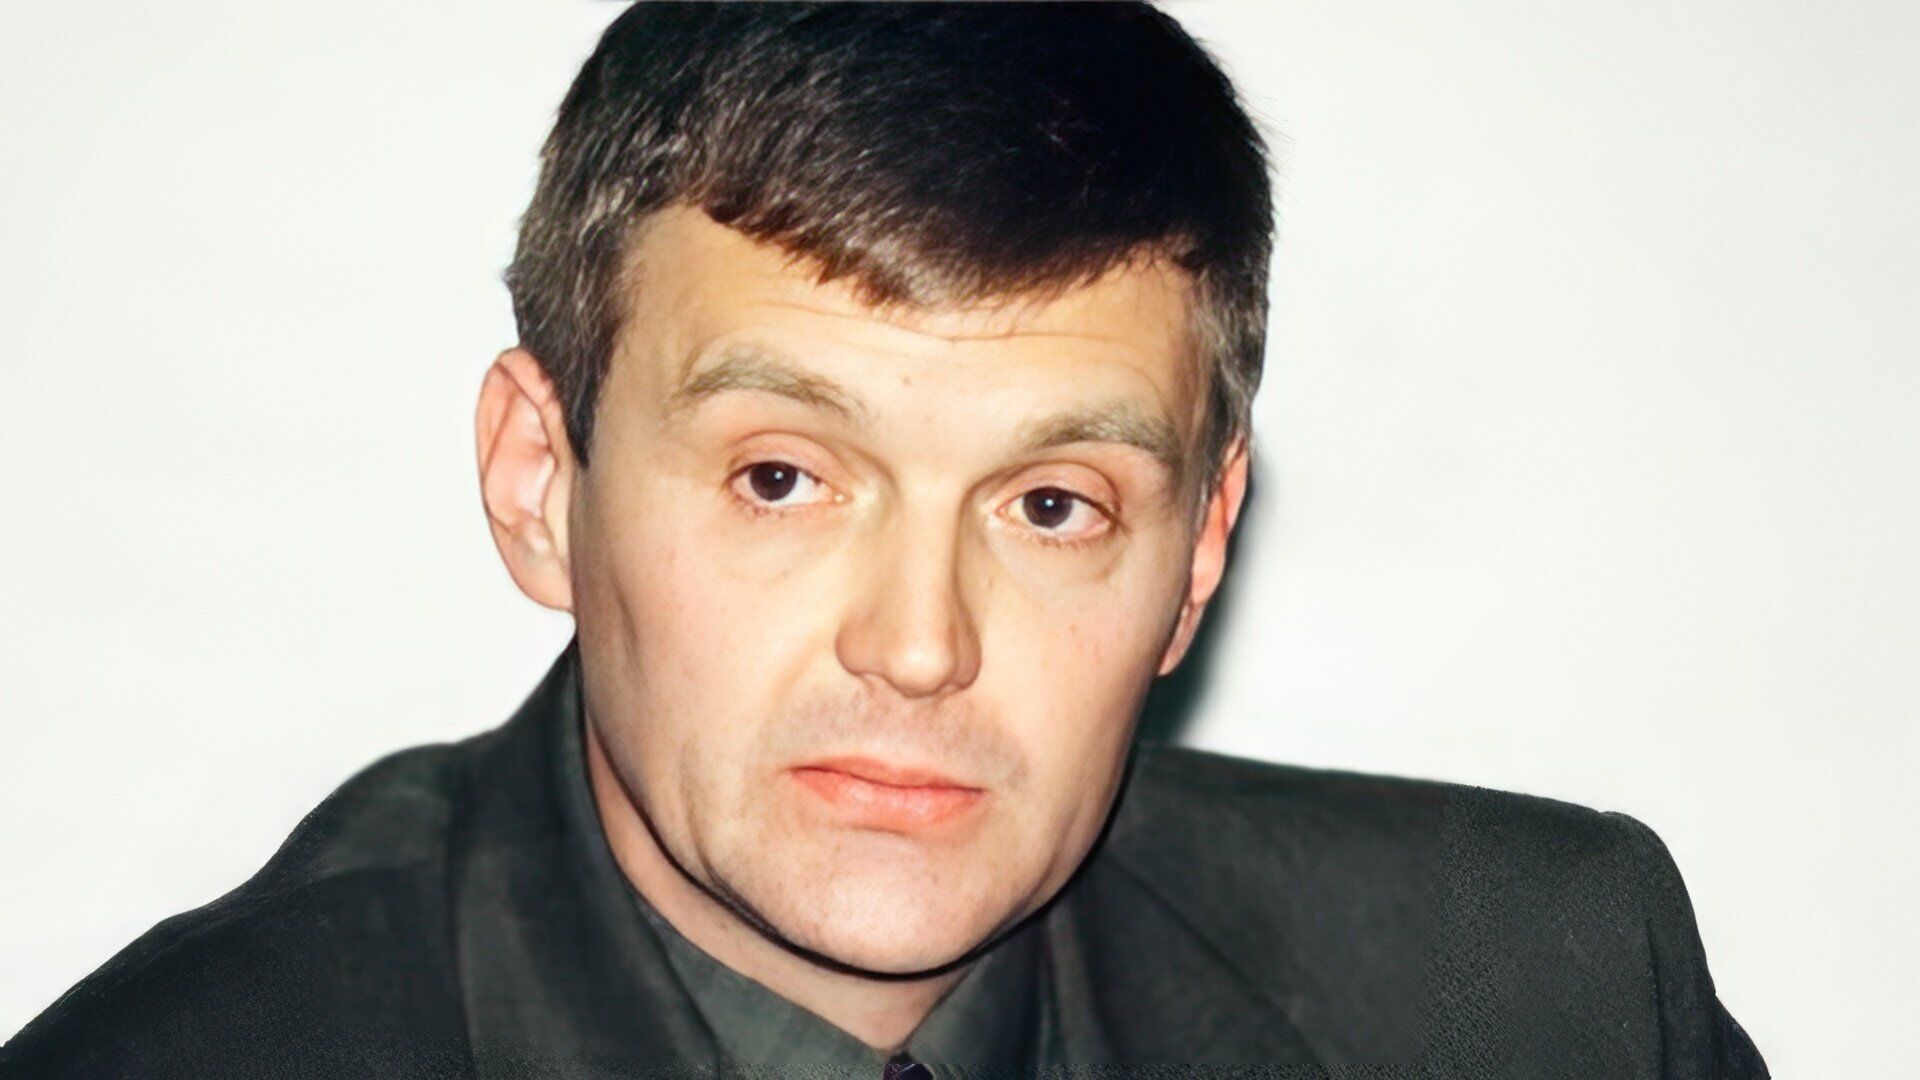 Навальный, Политковская, Немцов и другие: самые громкие политические убийства и смерти в России, которые связывают с Путиным